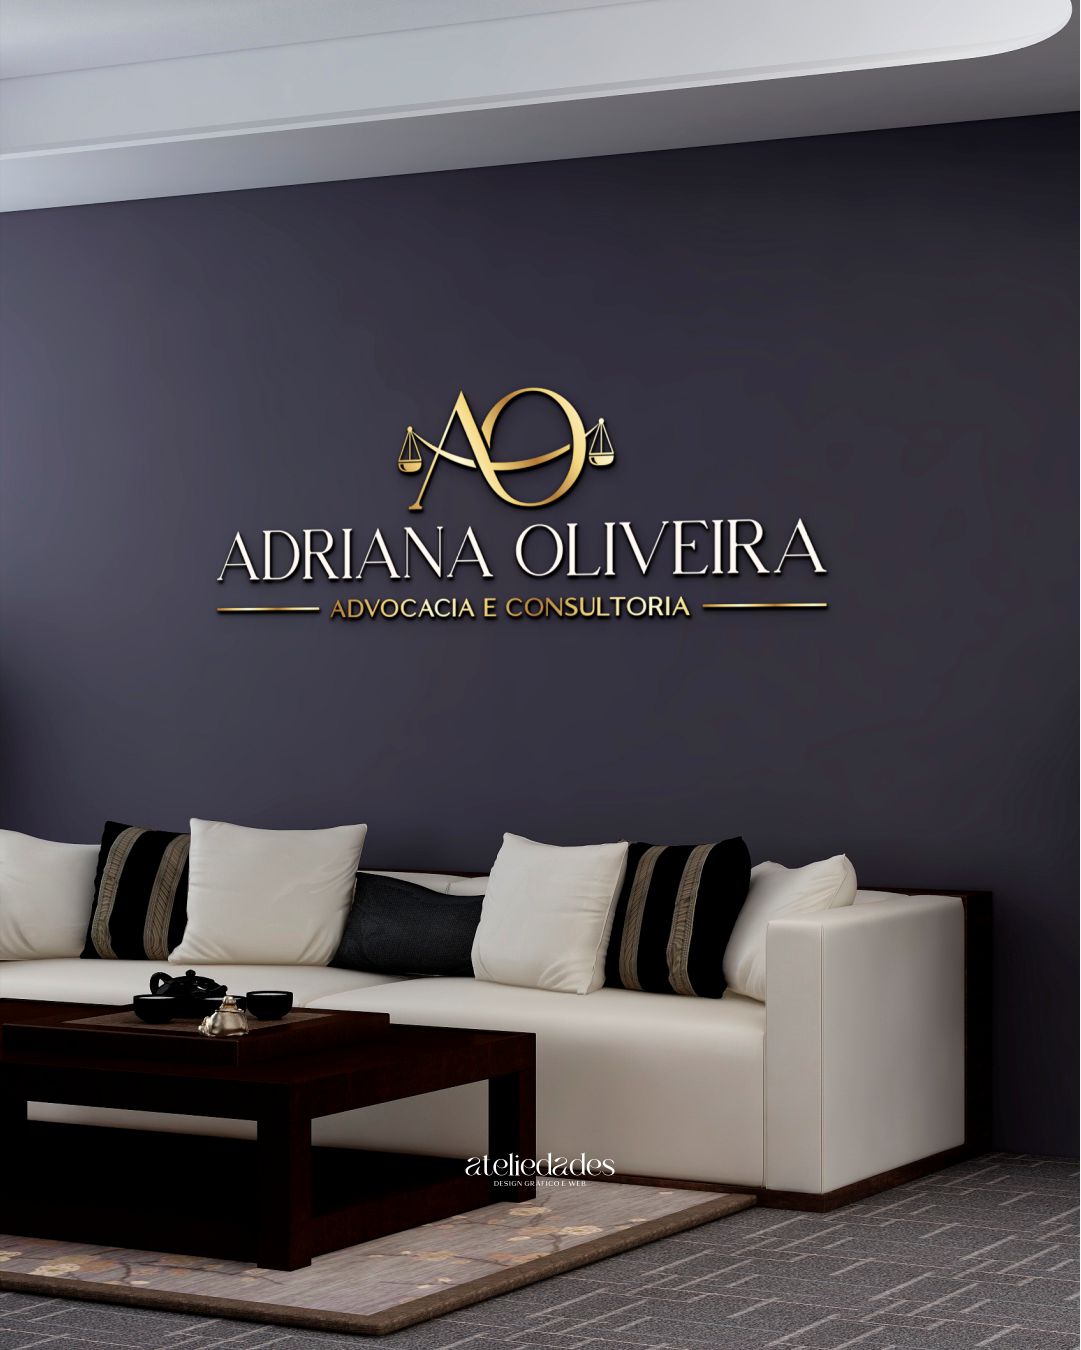 ateliedades logotipo para advogadas adriana oliveira